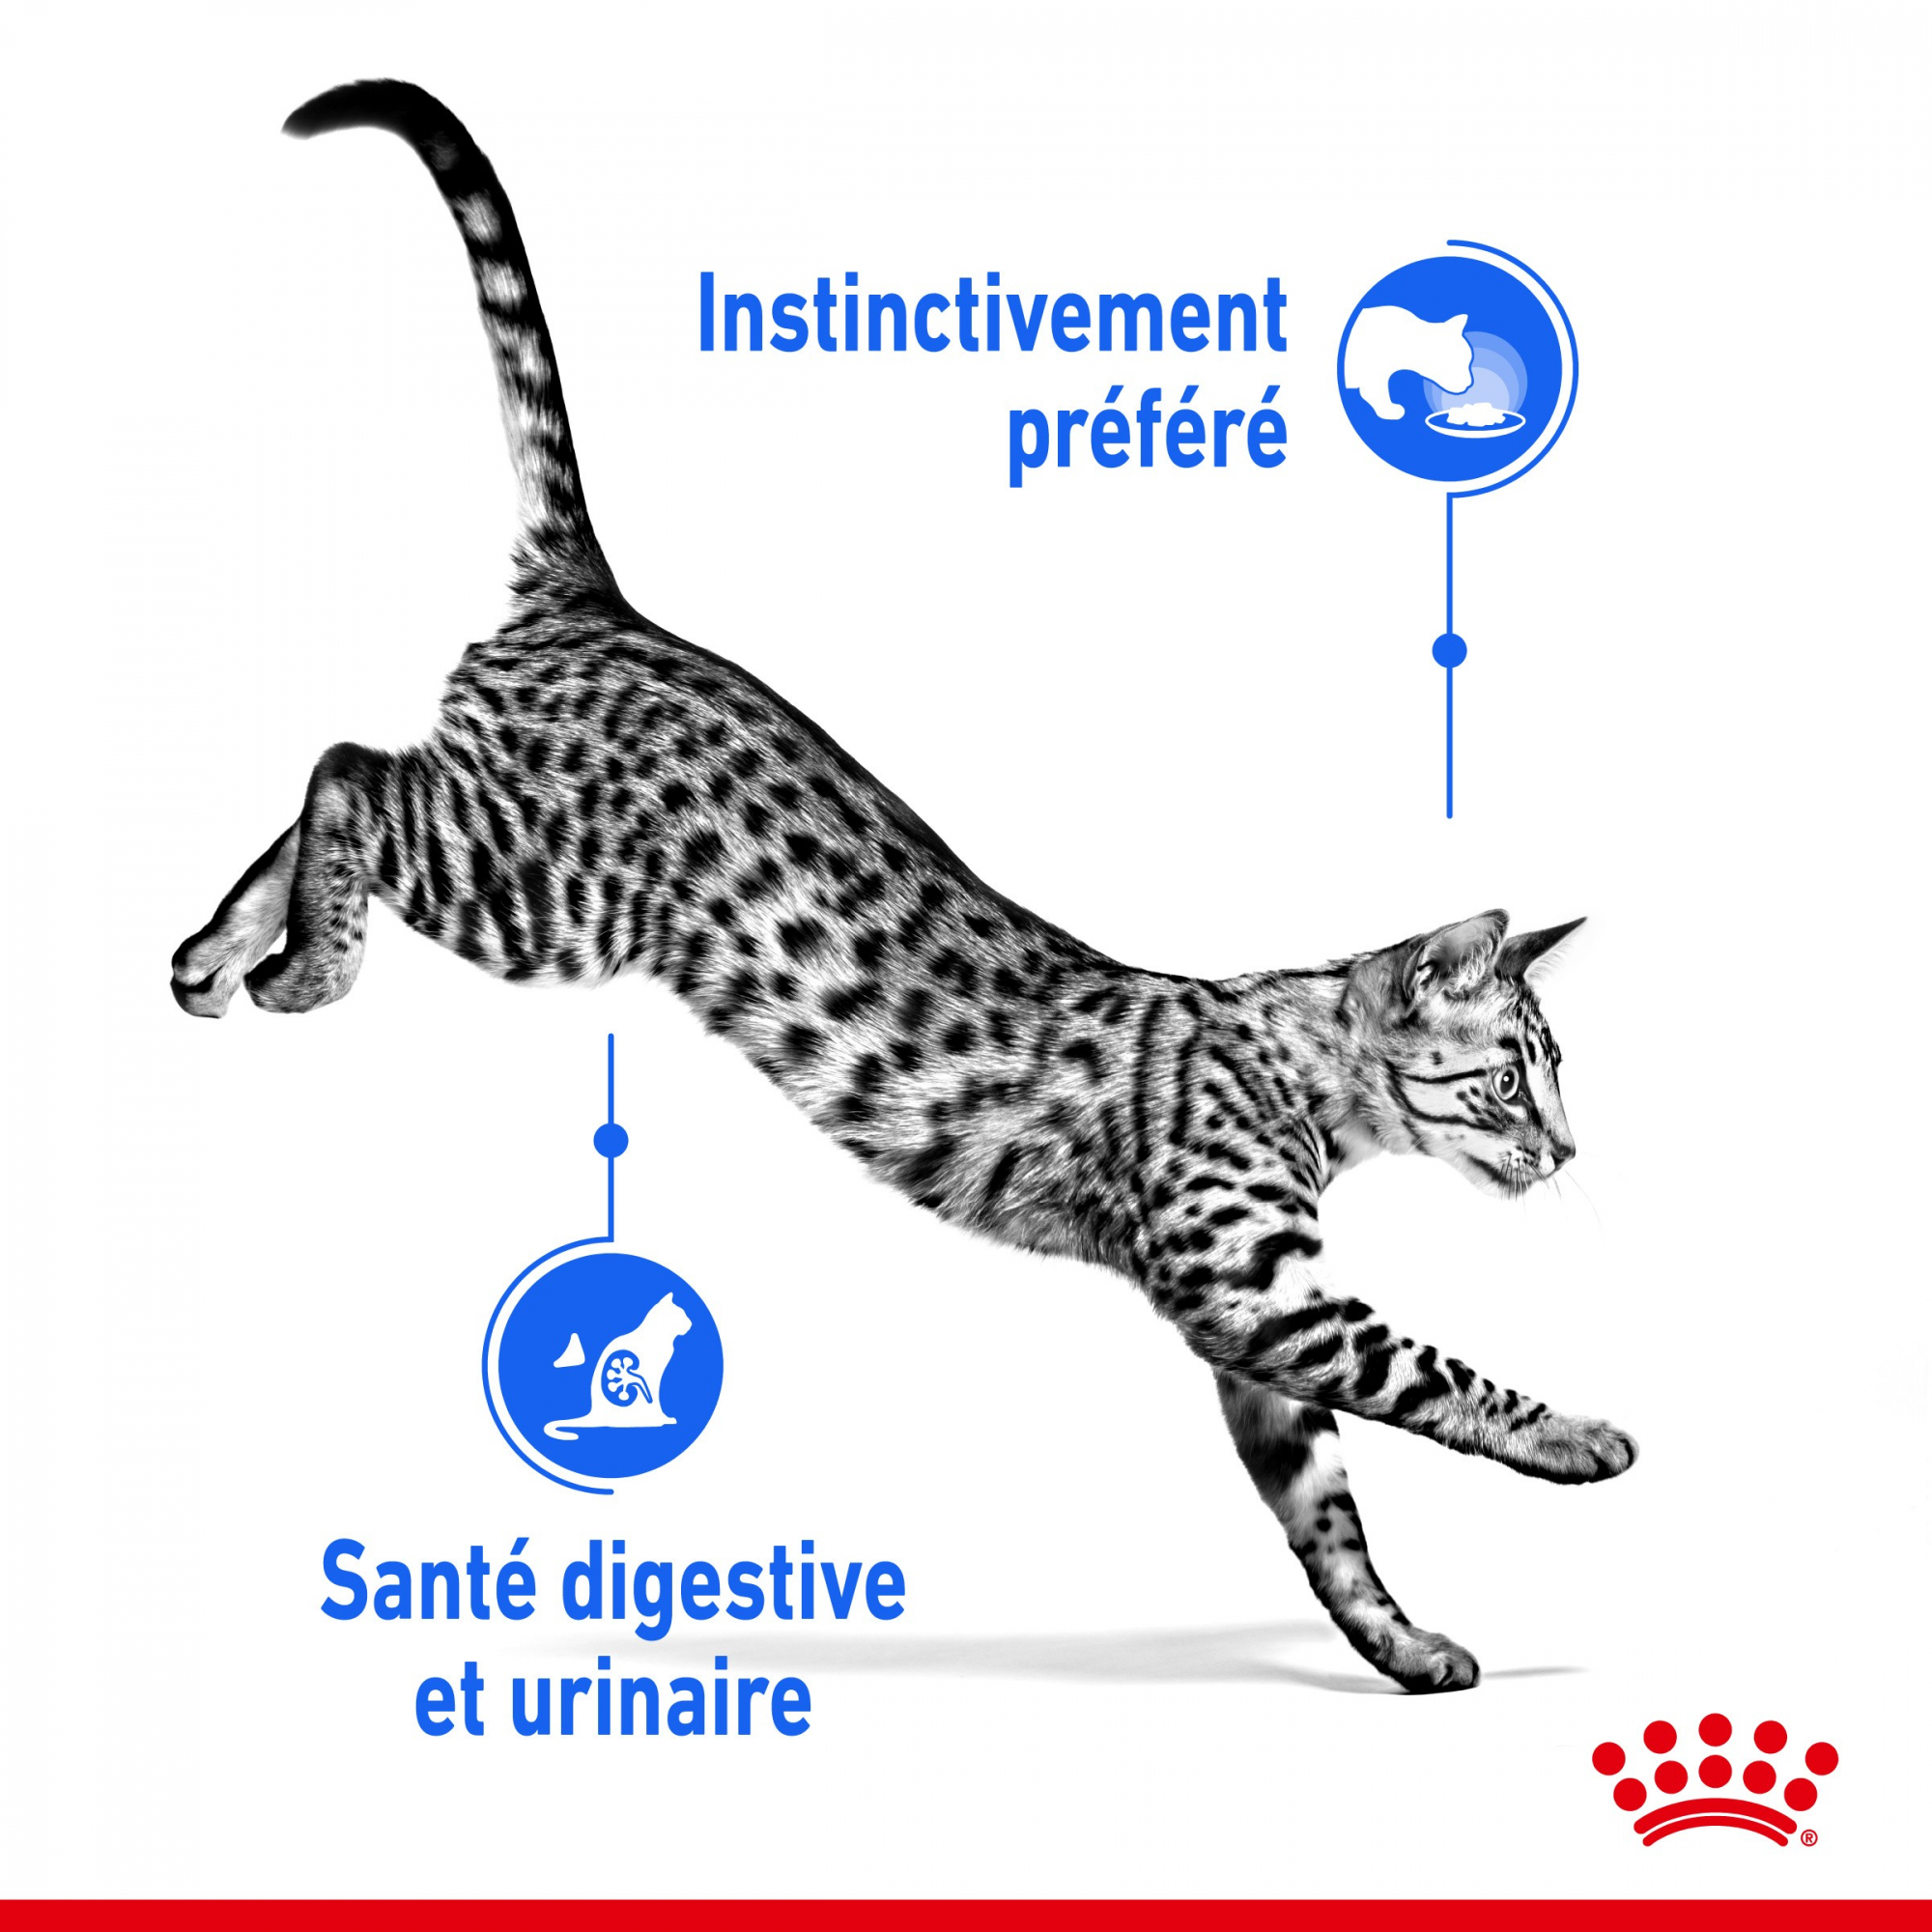 Royal Canin Sobres individuales Mousse INDOOR para gato de interior esterilizado